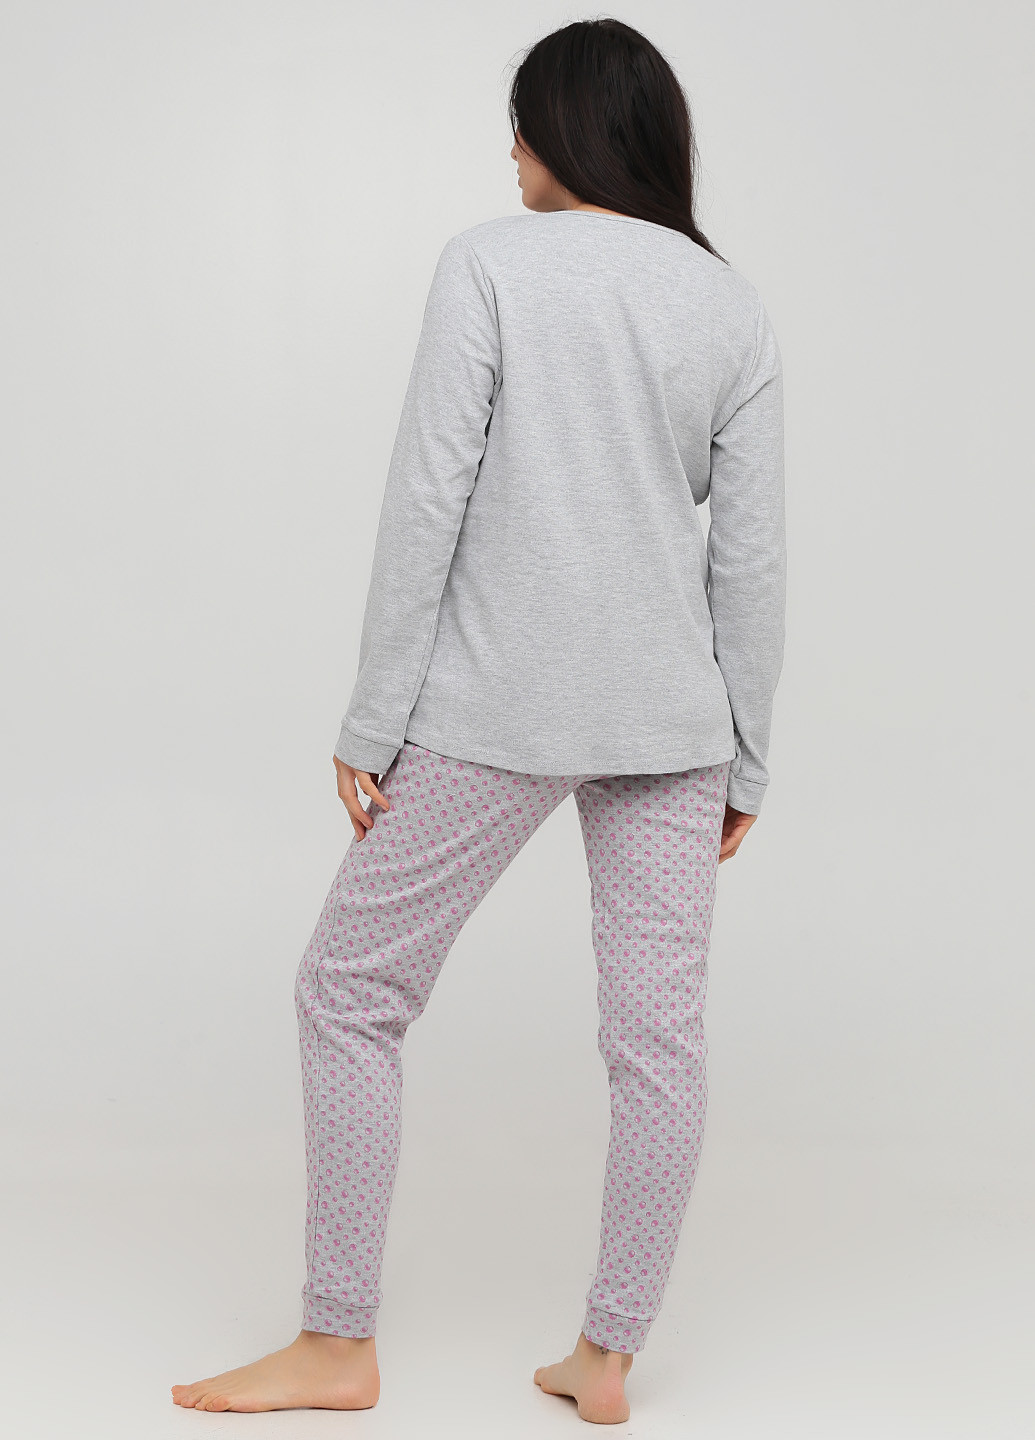 Светло-серая всесезон пижама (лонгслив, брюки) лонгслив + брюки SieLei